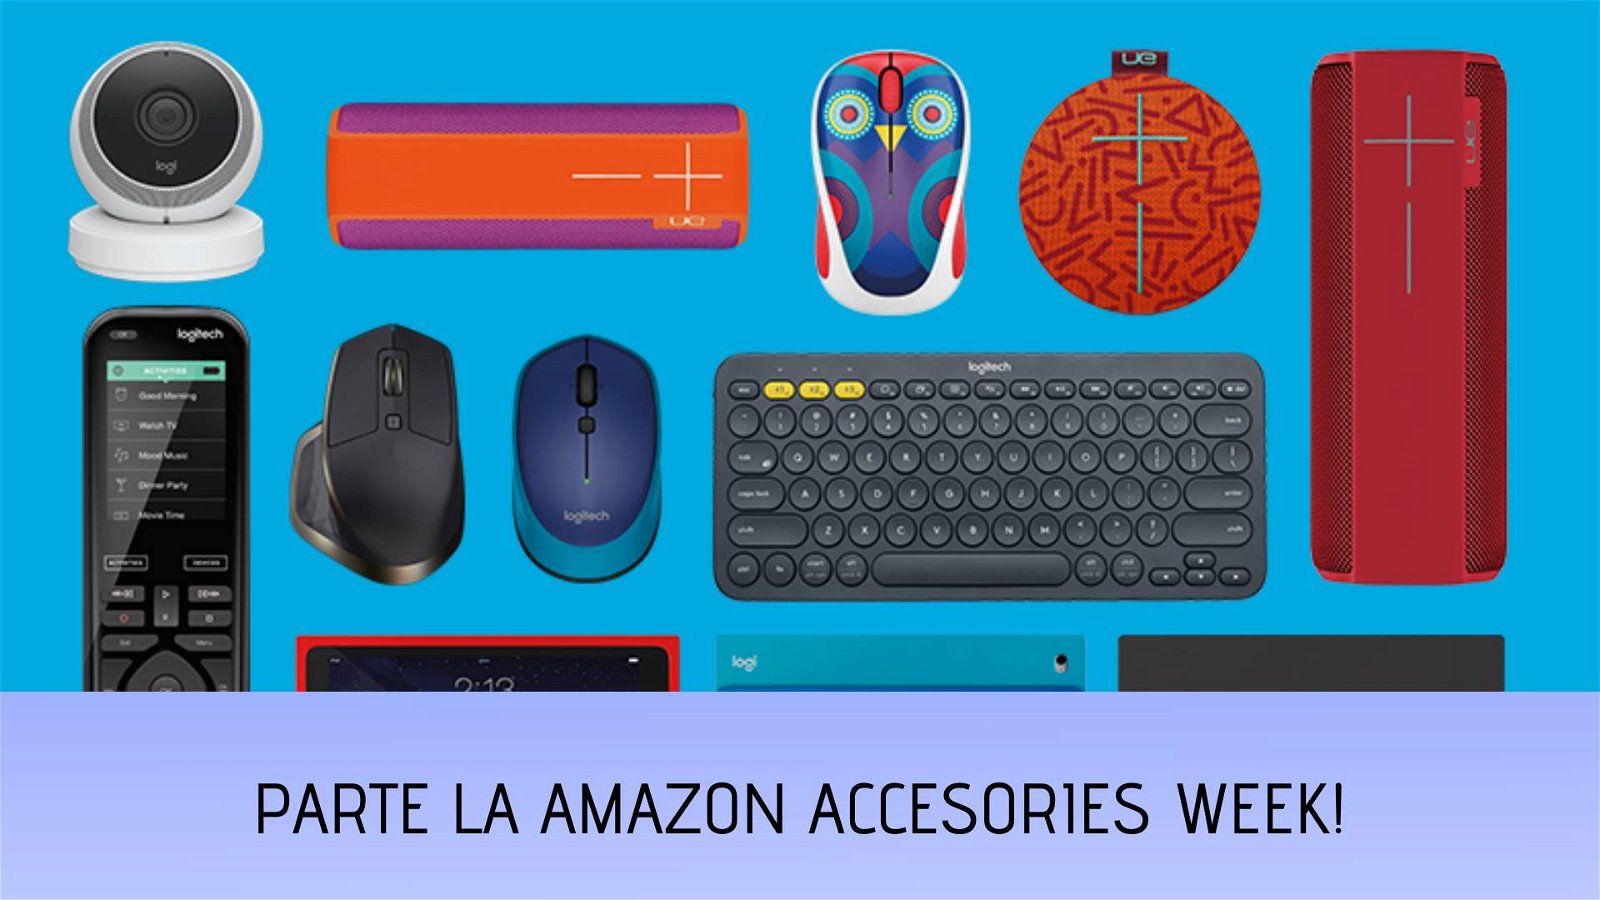 Immagine di Amazon Accessories Week, offerte e sconti su tantissimi accessori di ogni tipo